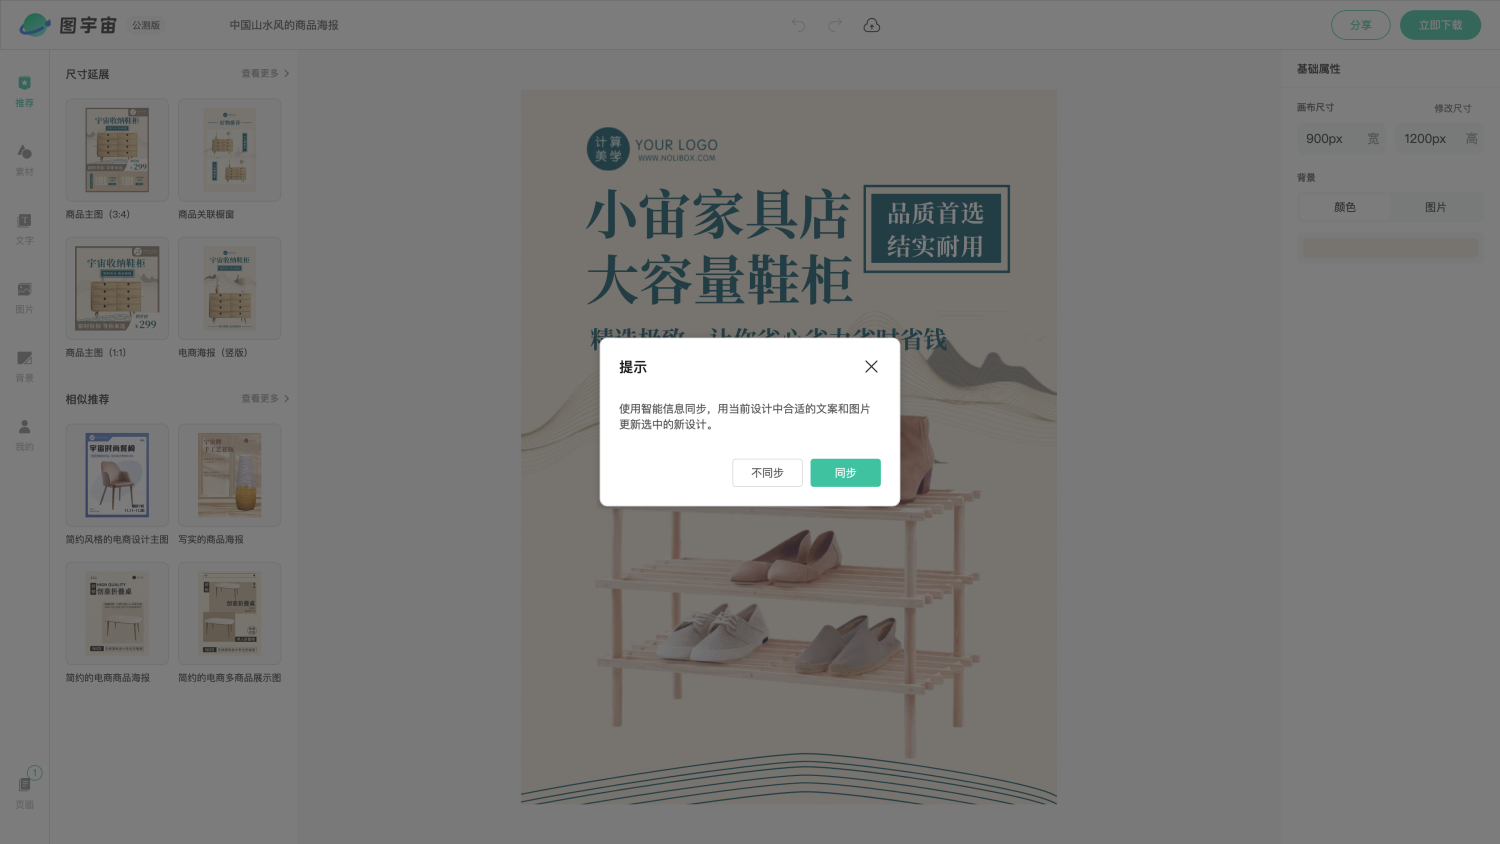 图宇宙-编辑器-中国山水风的商品海报